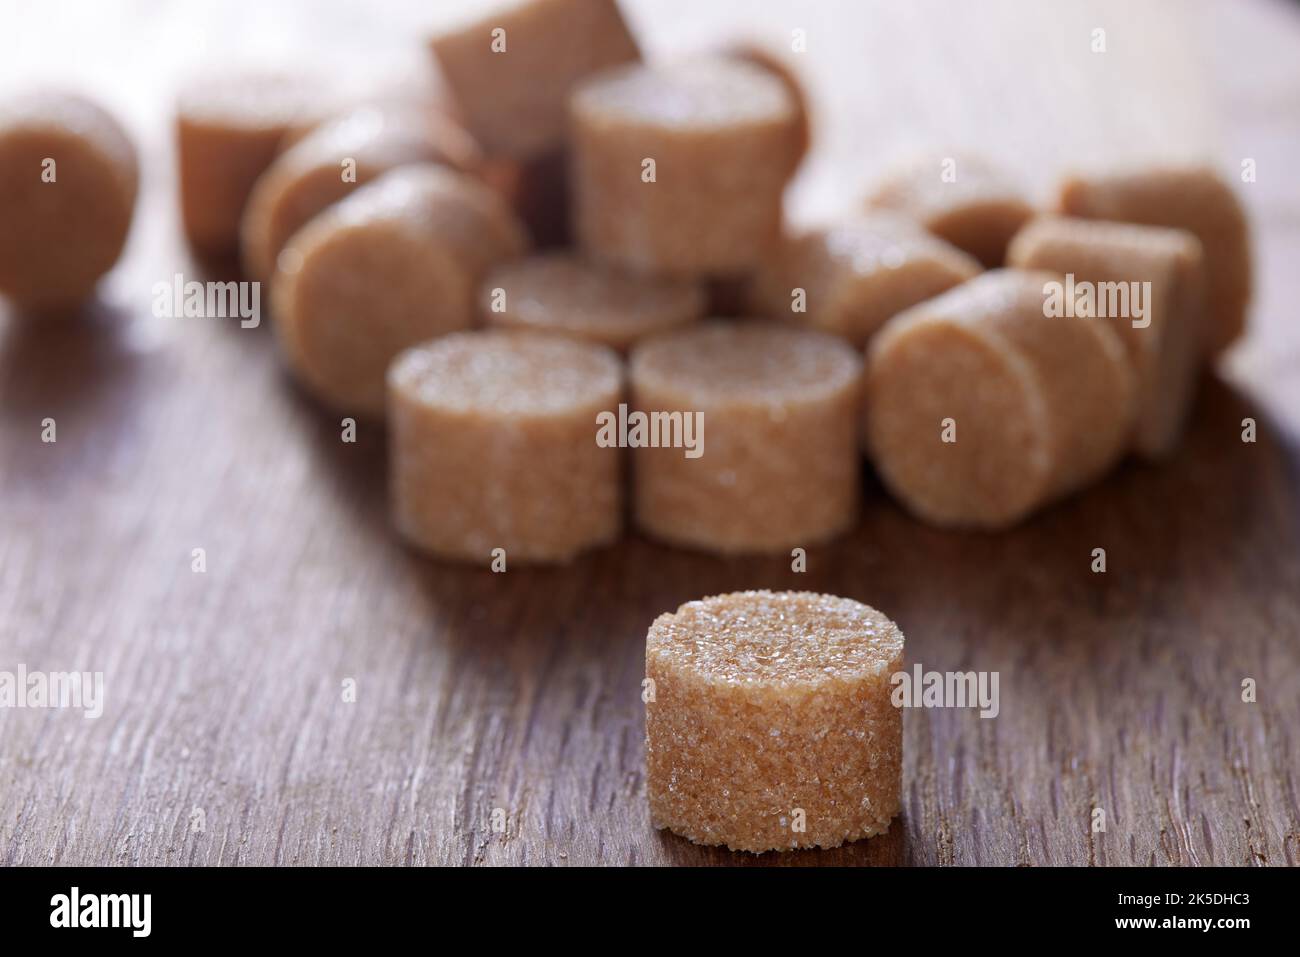 El azúcar marrón redondo se forma sobre una vieja tabla de madera oscura - vista de cerca Foto de stock